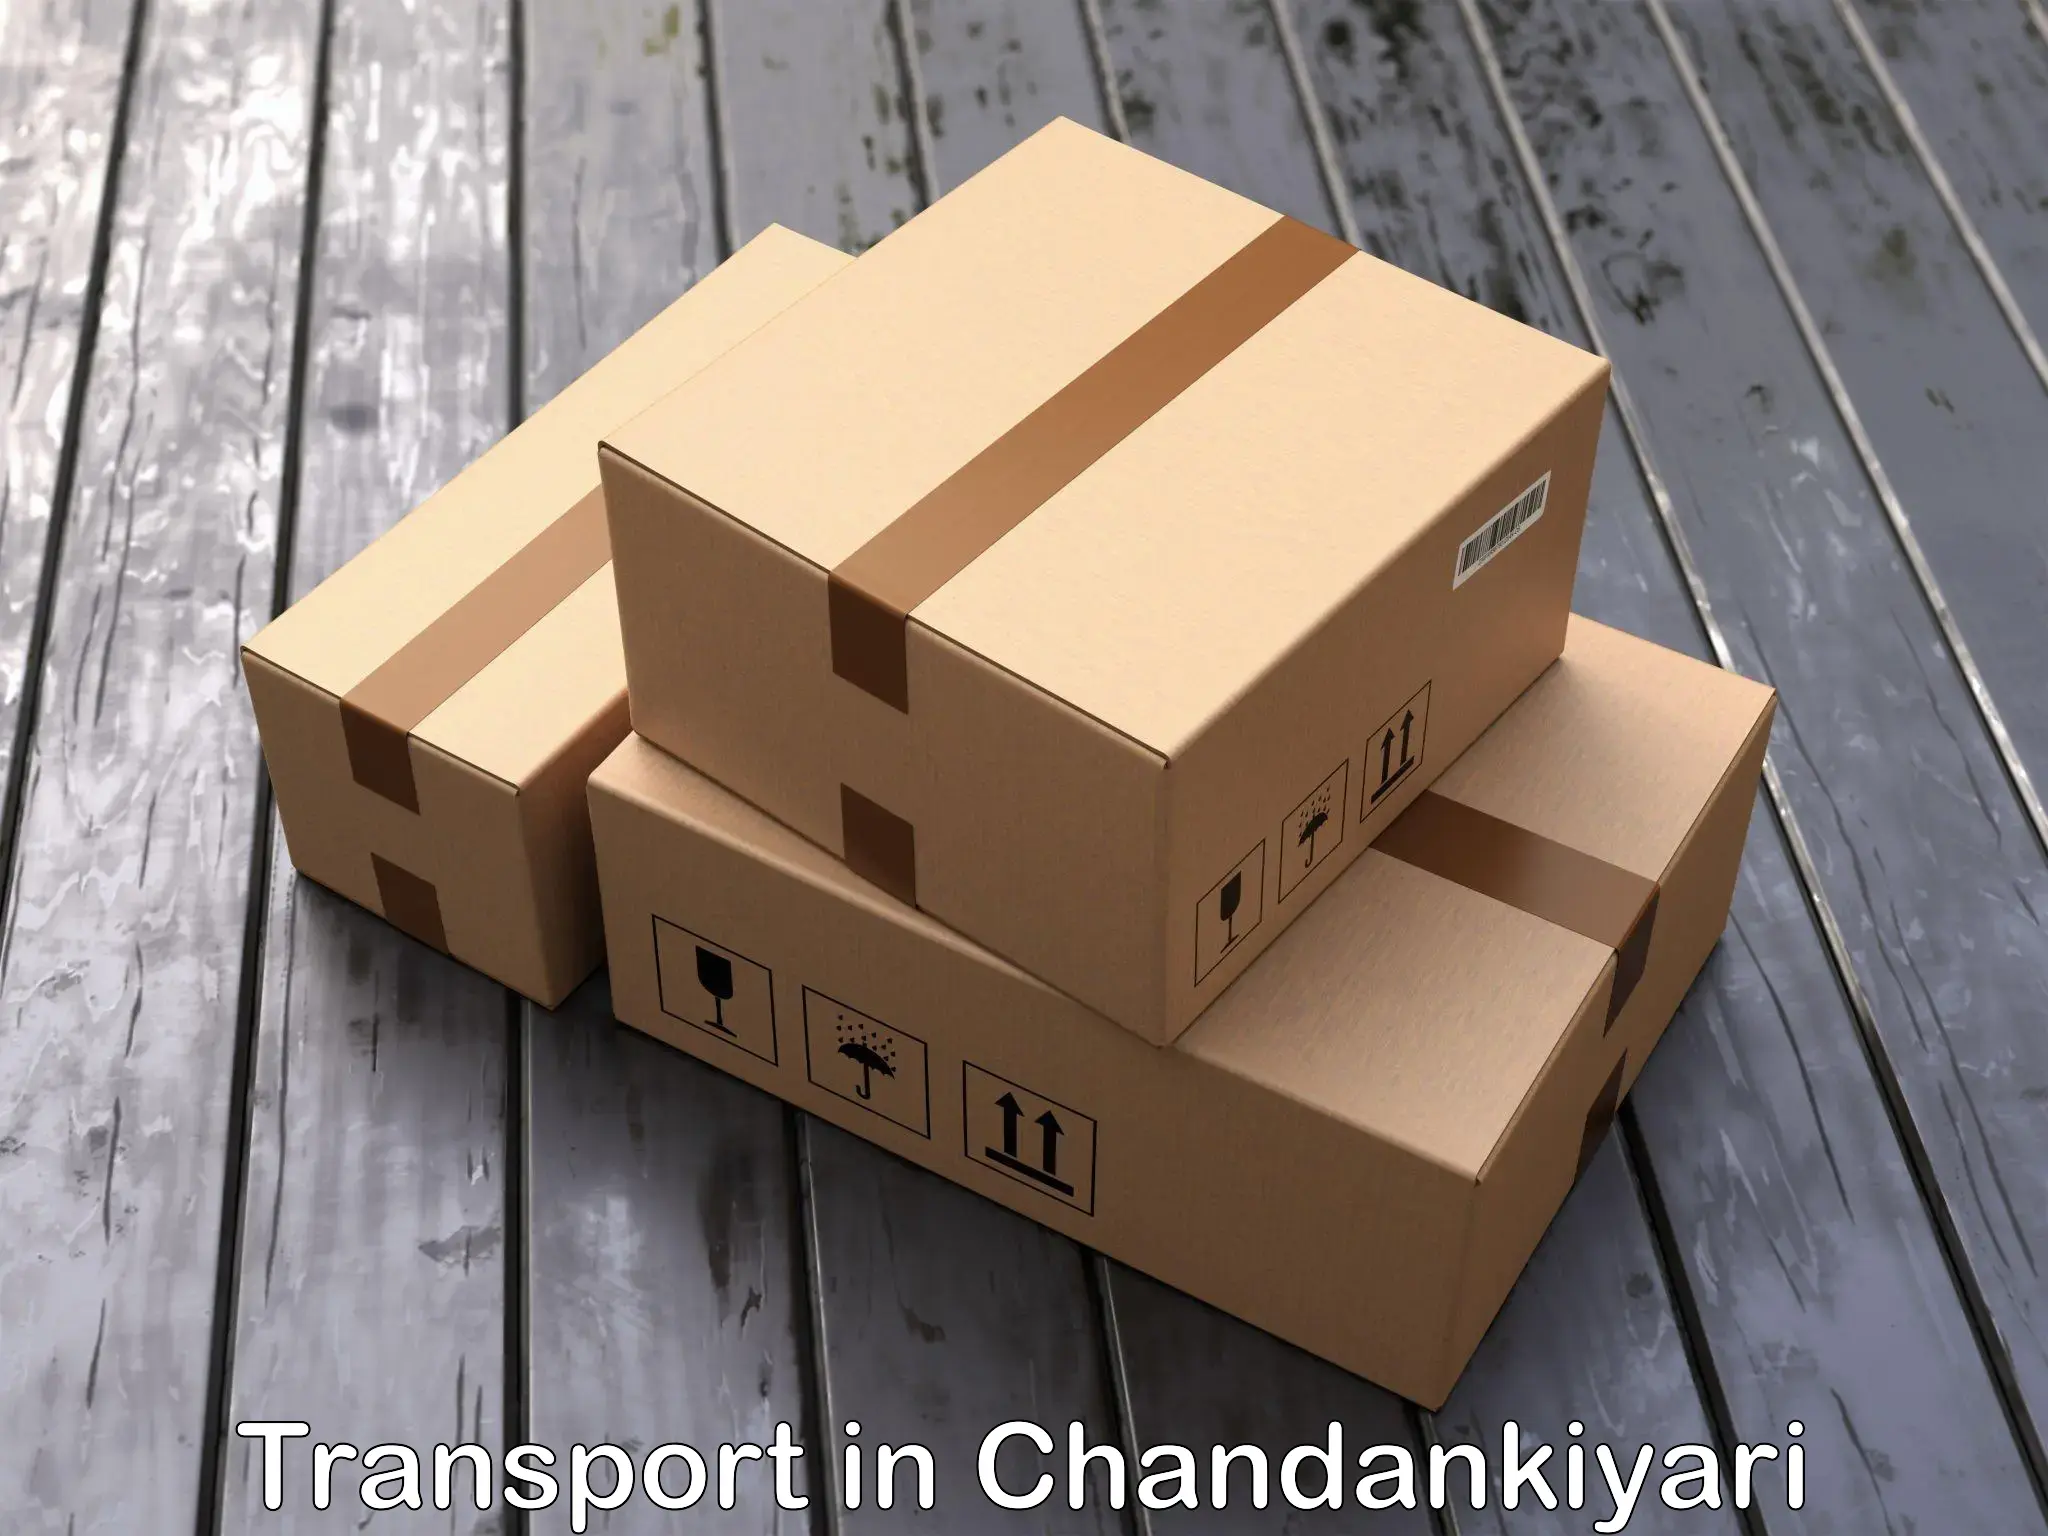 Express transport services in Chandankiyari